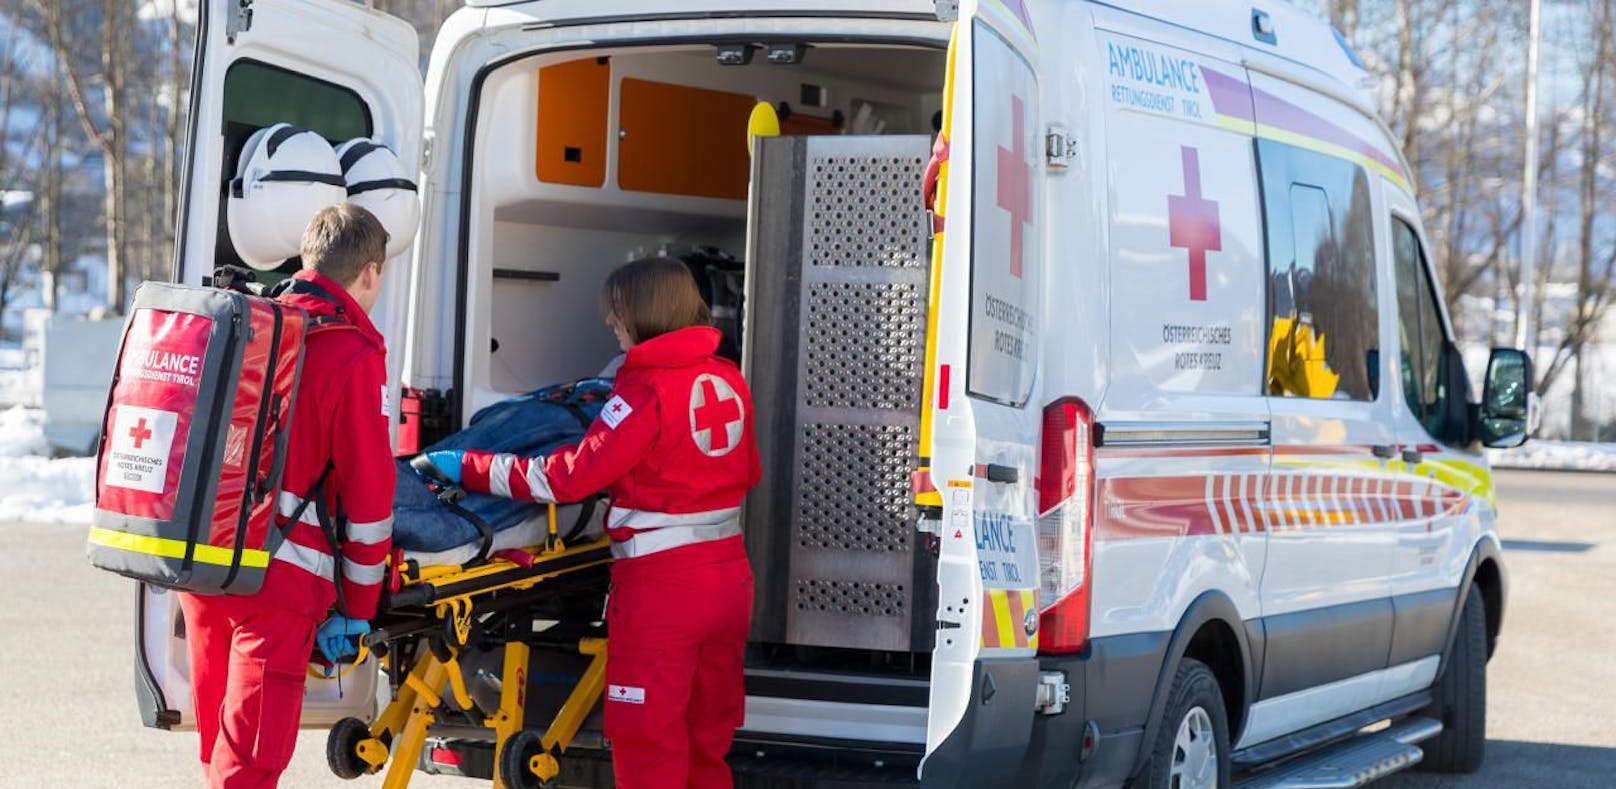 Busfahrer rettet Fahrgast nach Herzstillstand das Leben. Der 72-jährige wurde unter Notarztbegleitung ins LKH Bruck an der Mur gefahren.